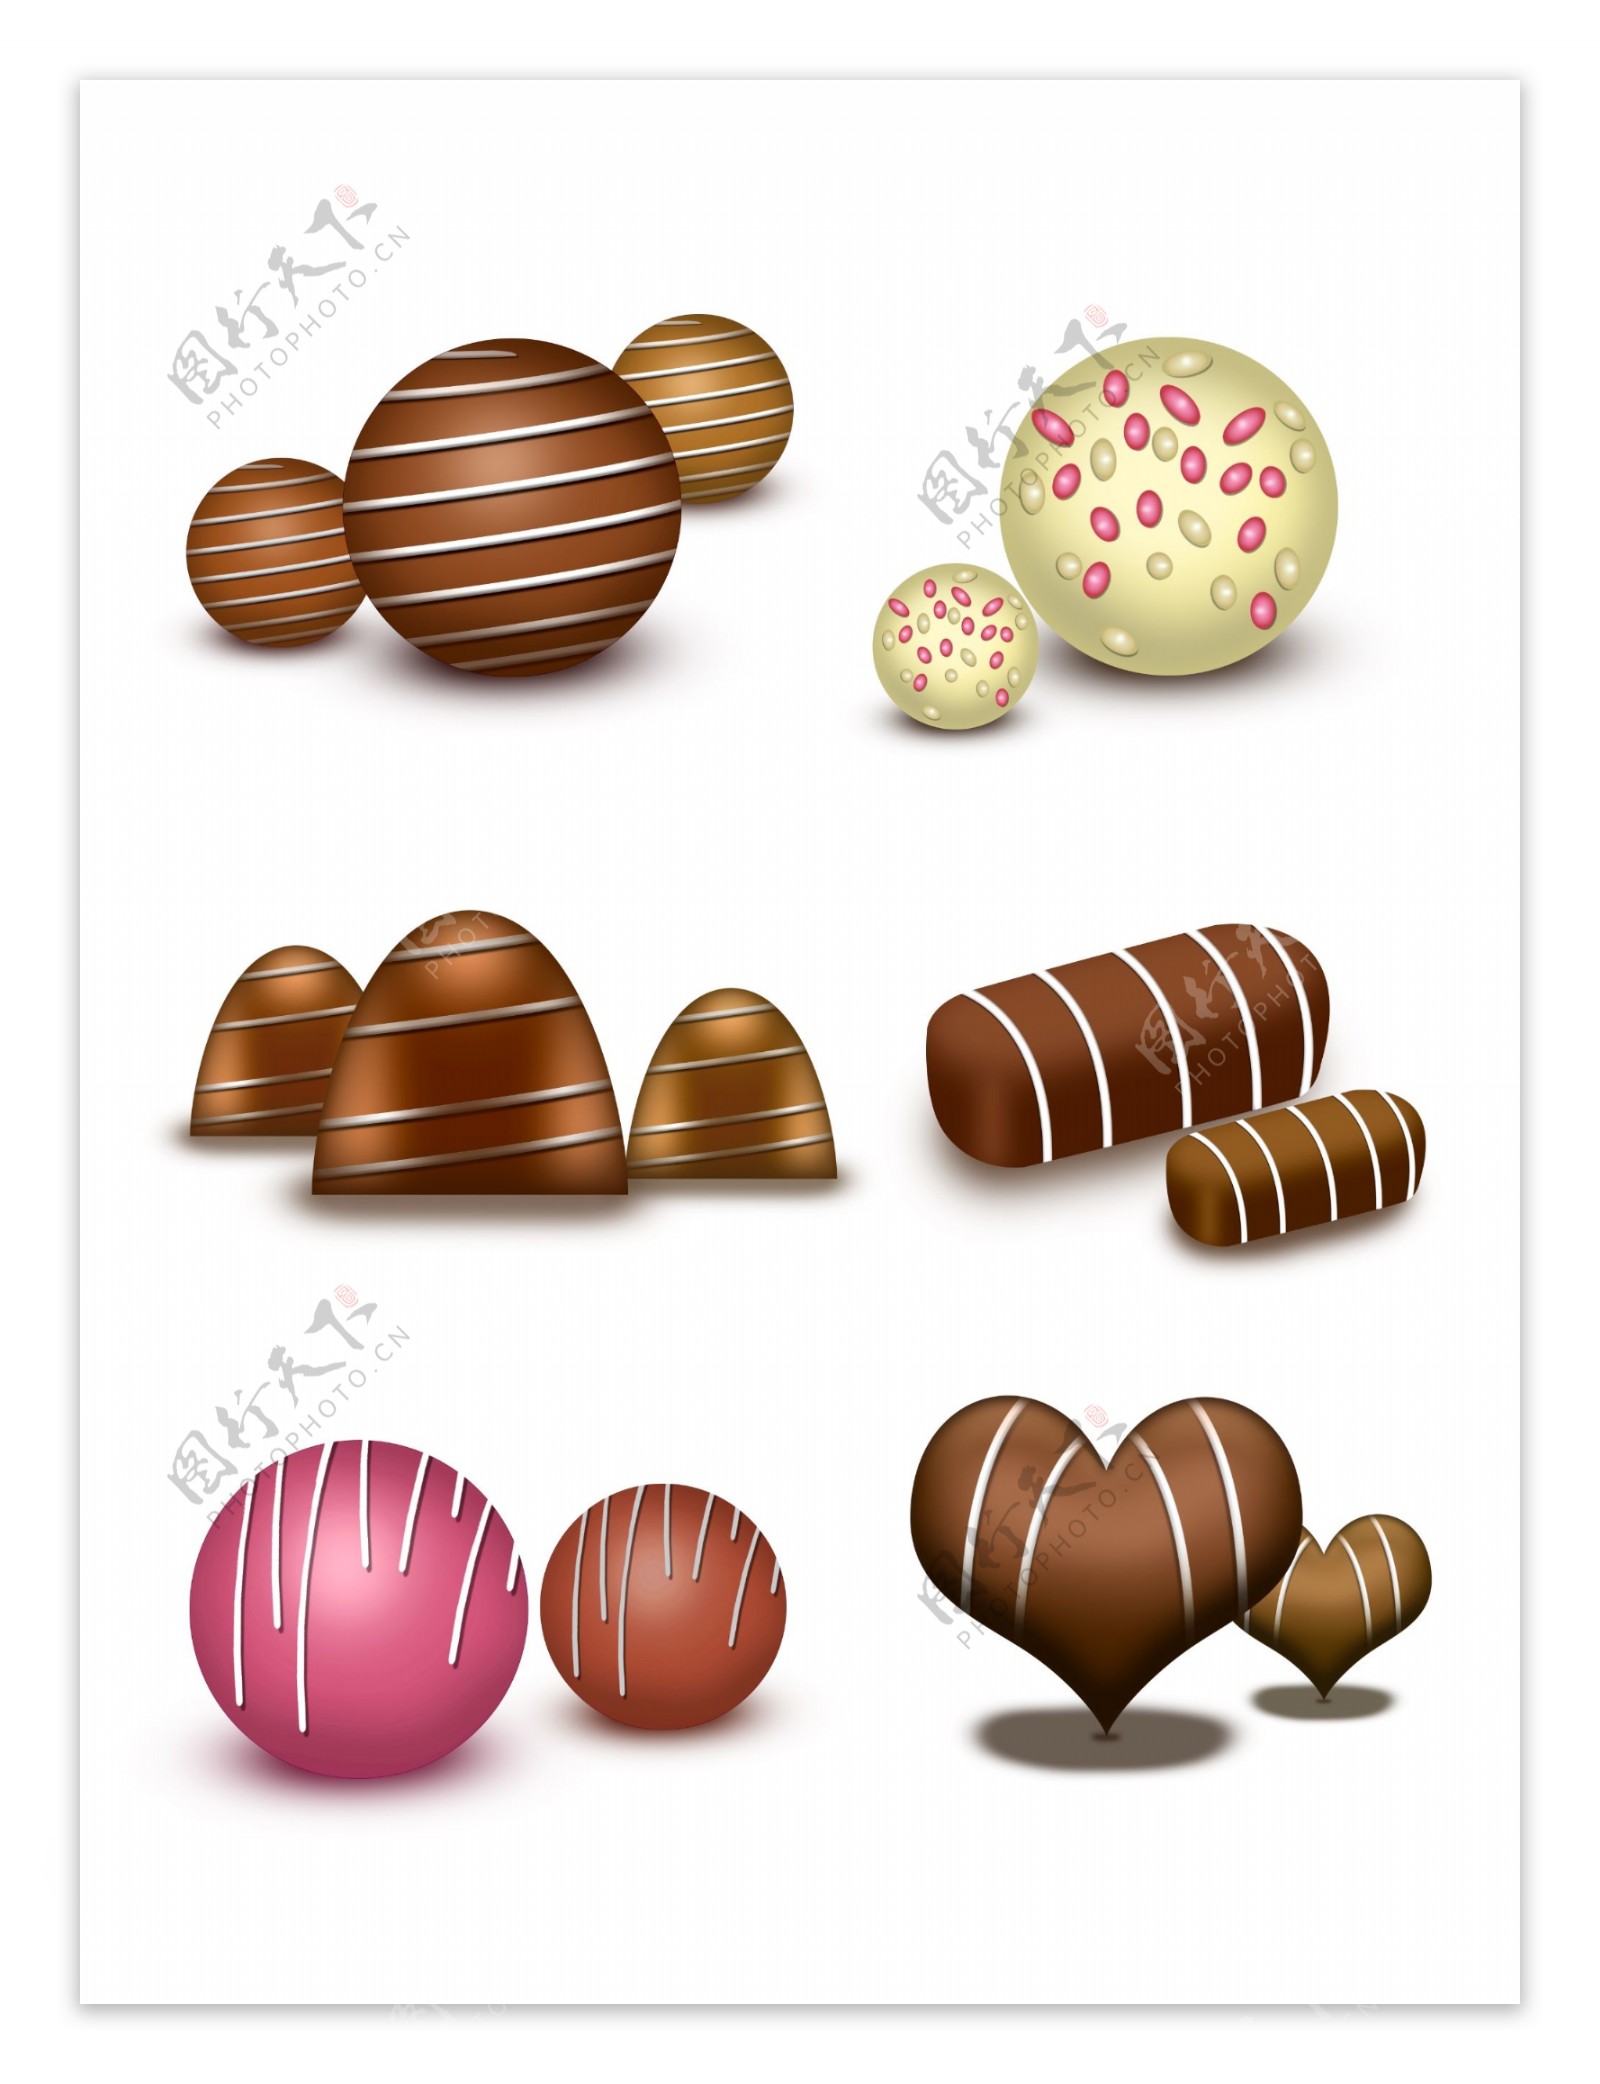 六款巧克力效果图案素材